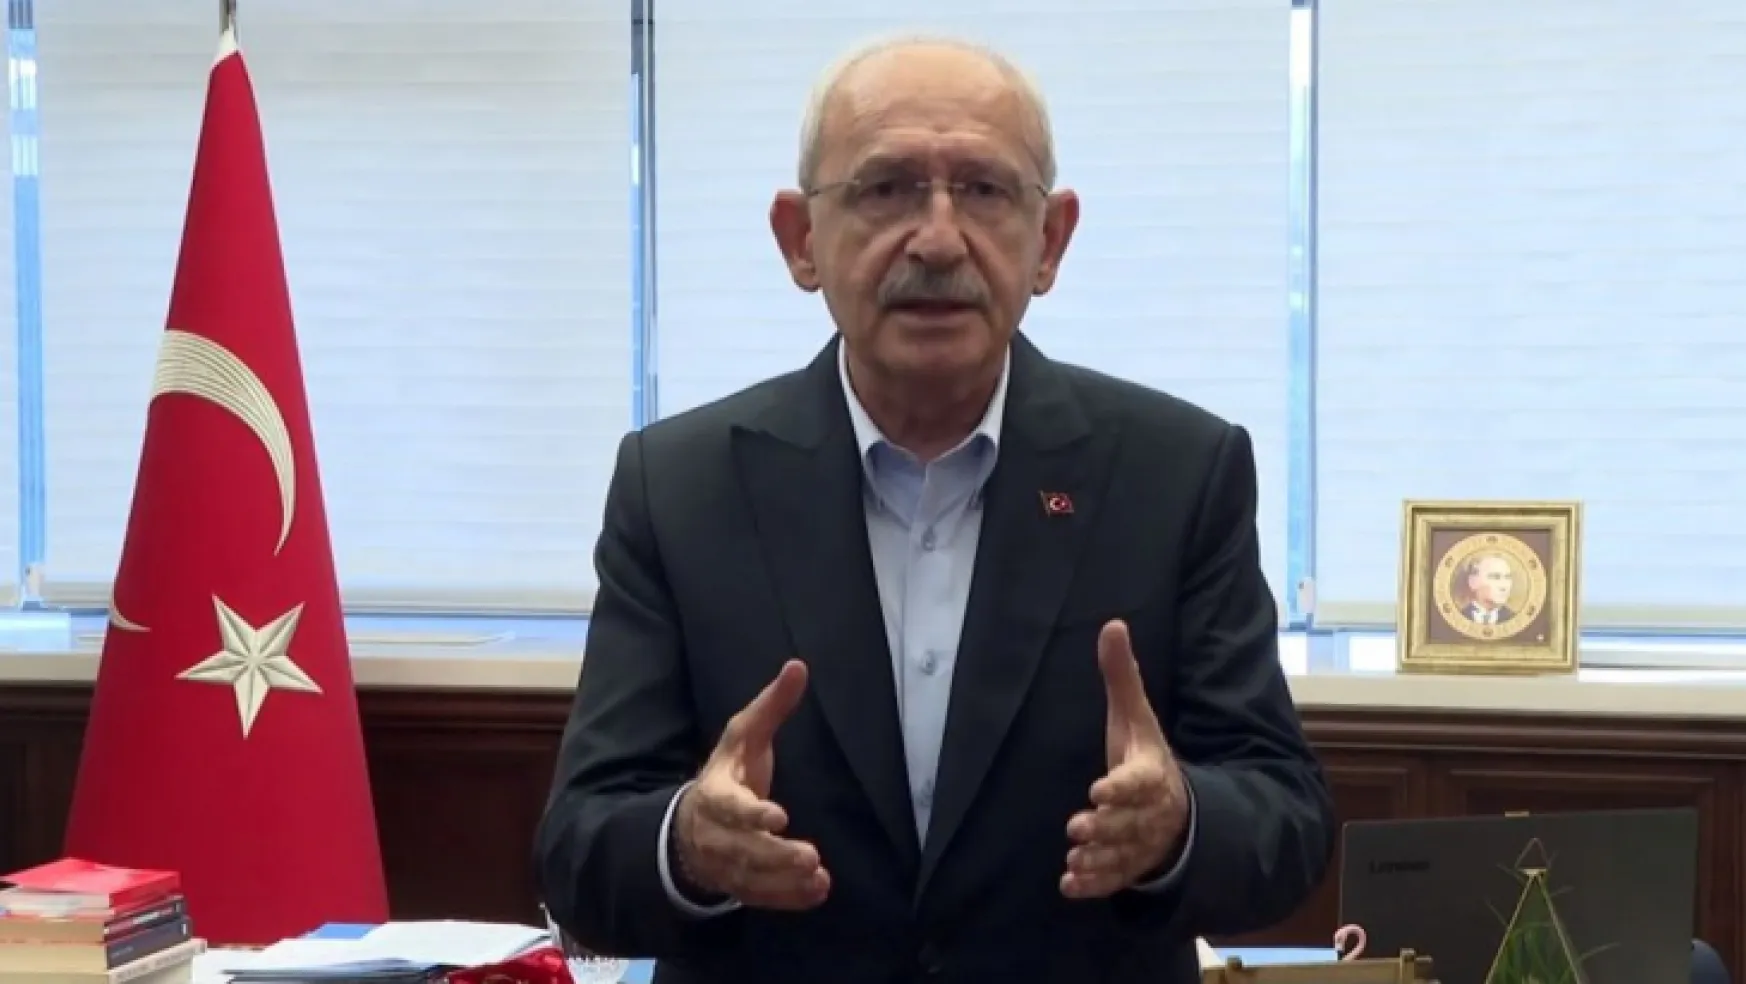 Kılıçdaroğlu'dan ilk açıklama: Seçim ahlaki açıdan sorgulanmalıdır